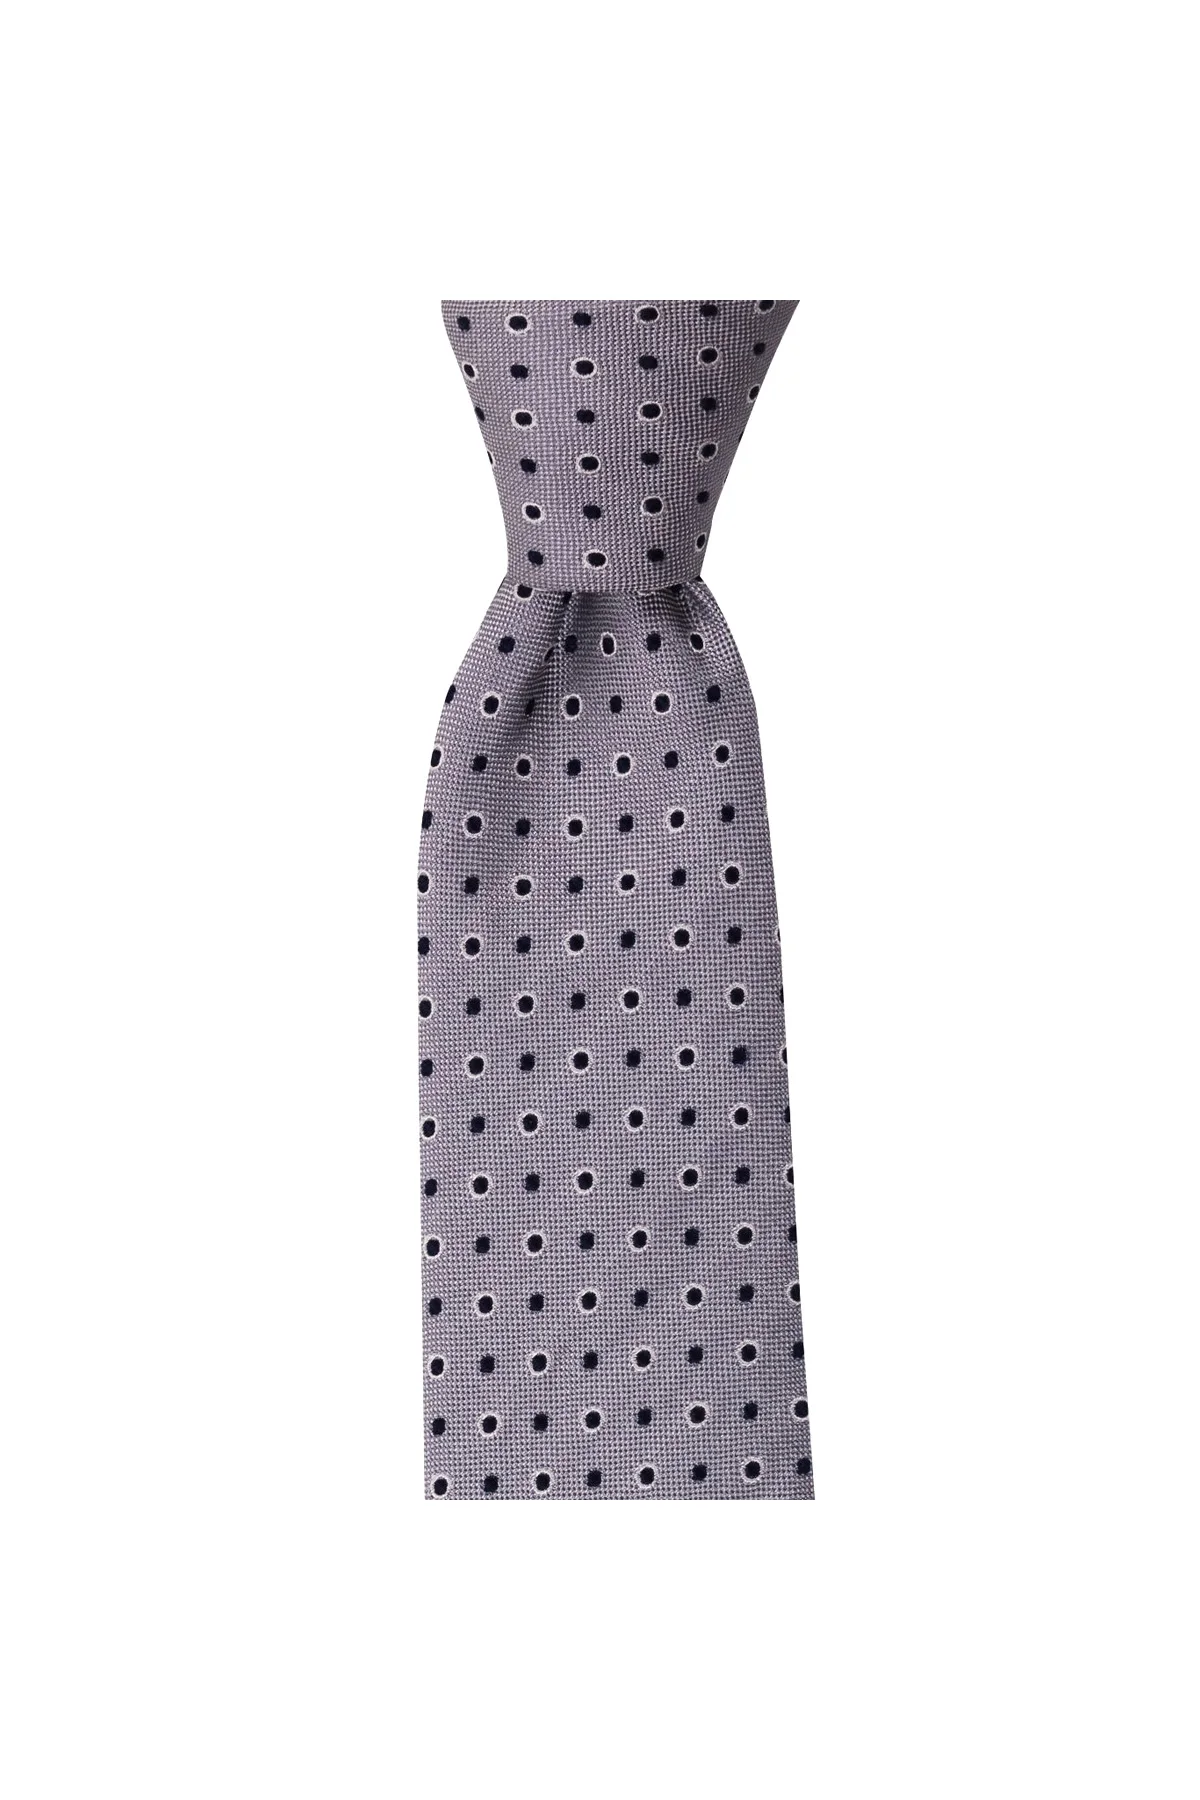 Мужской Шелковый галстук классического дизайна, Сделано в Италии, Ширина 7,5 см, длина 145 см, отличный наряд с классическими мужскими костюмам...